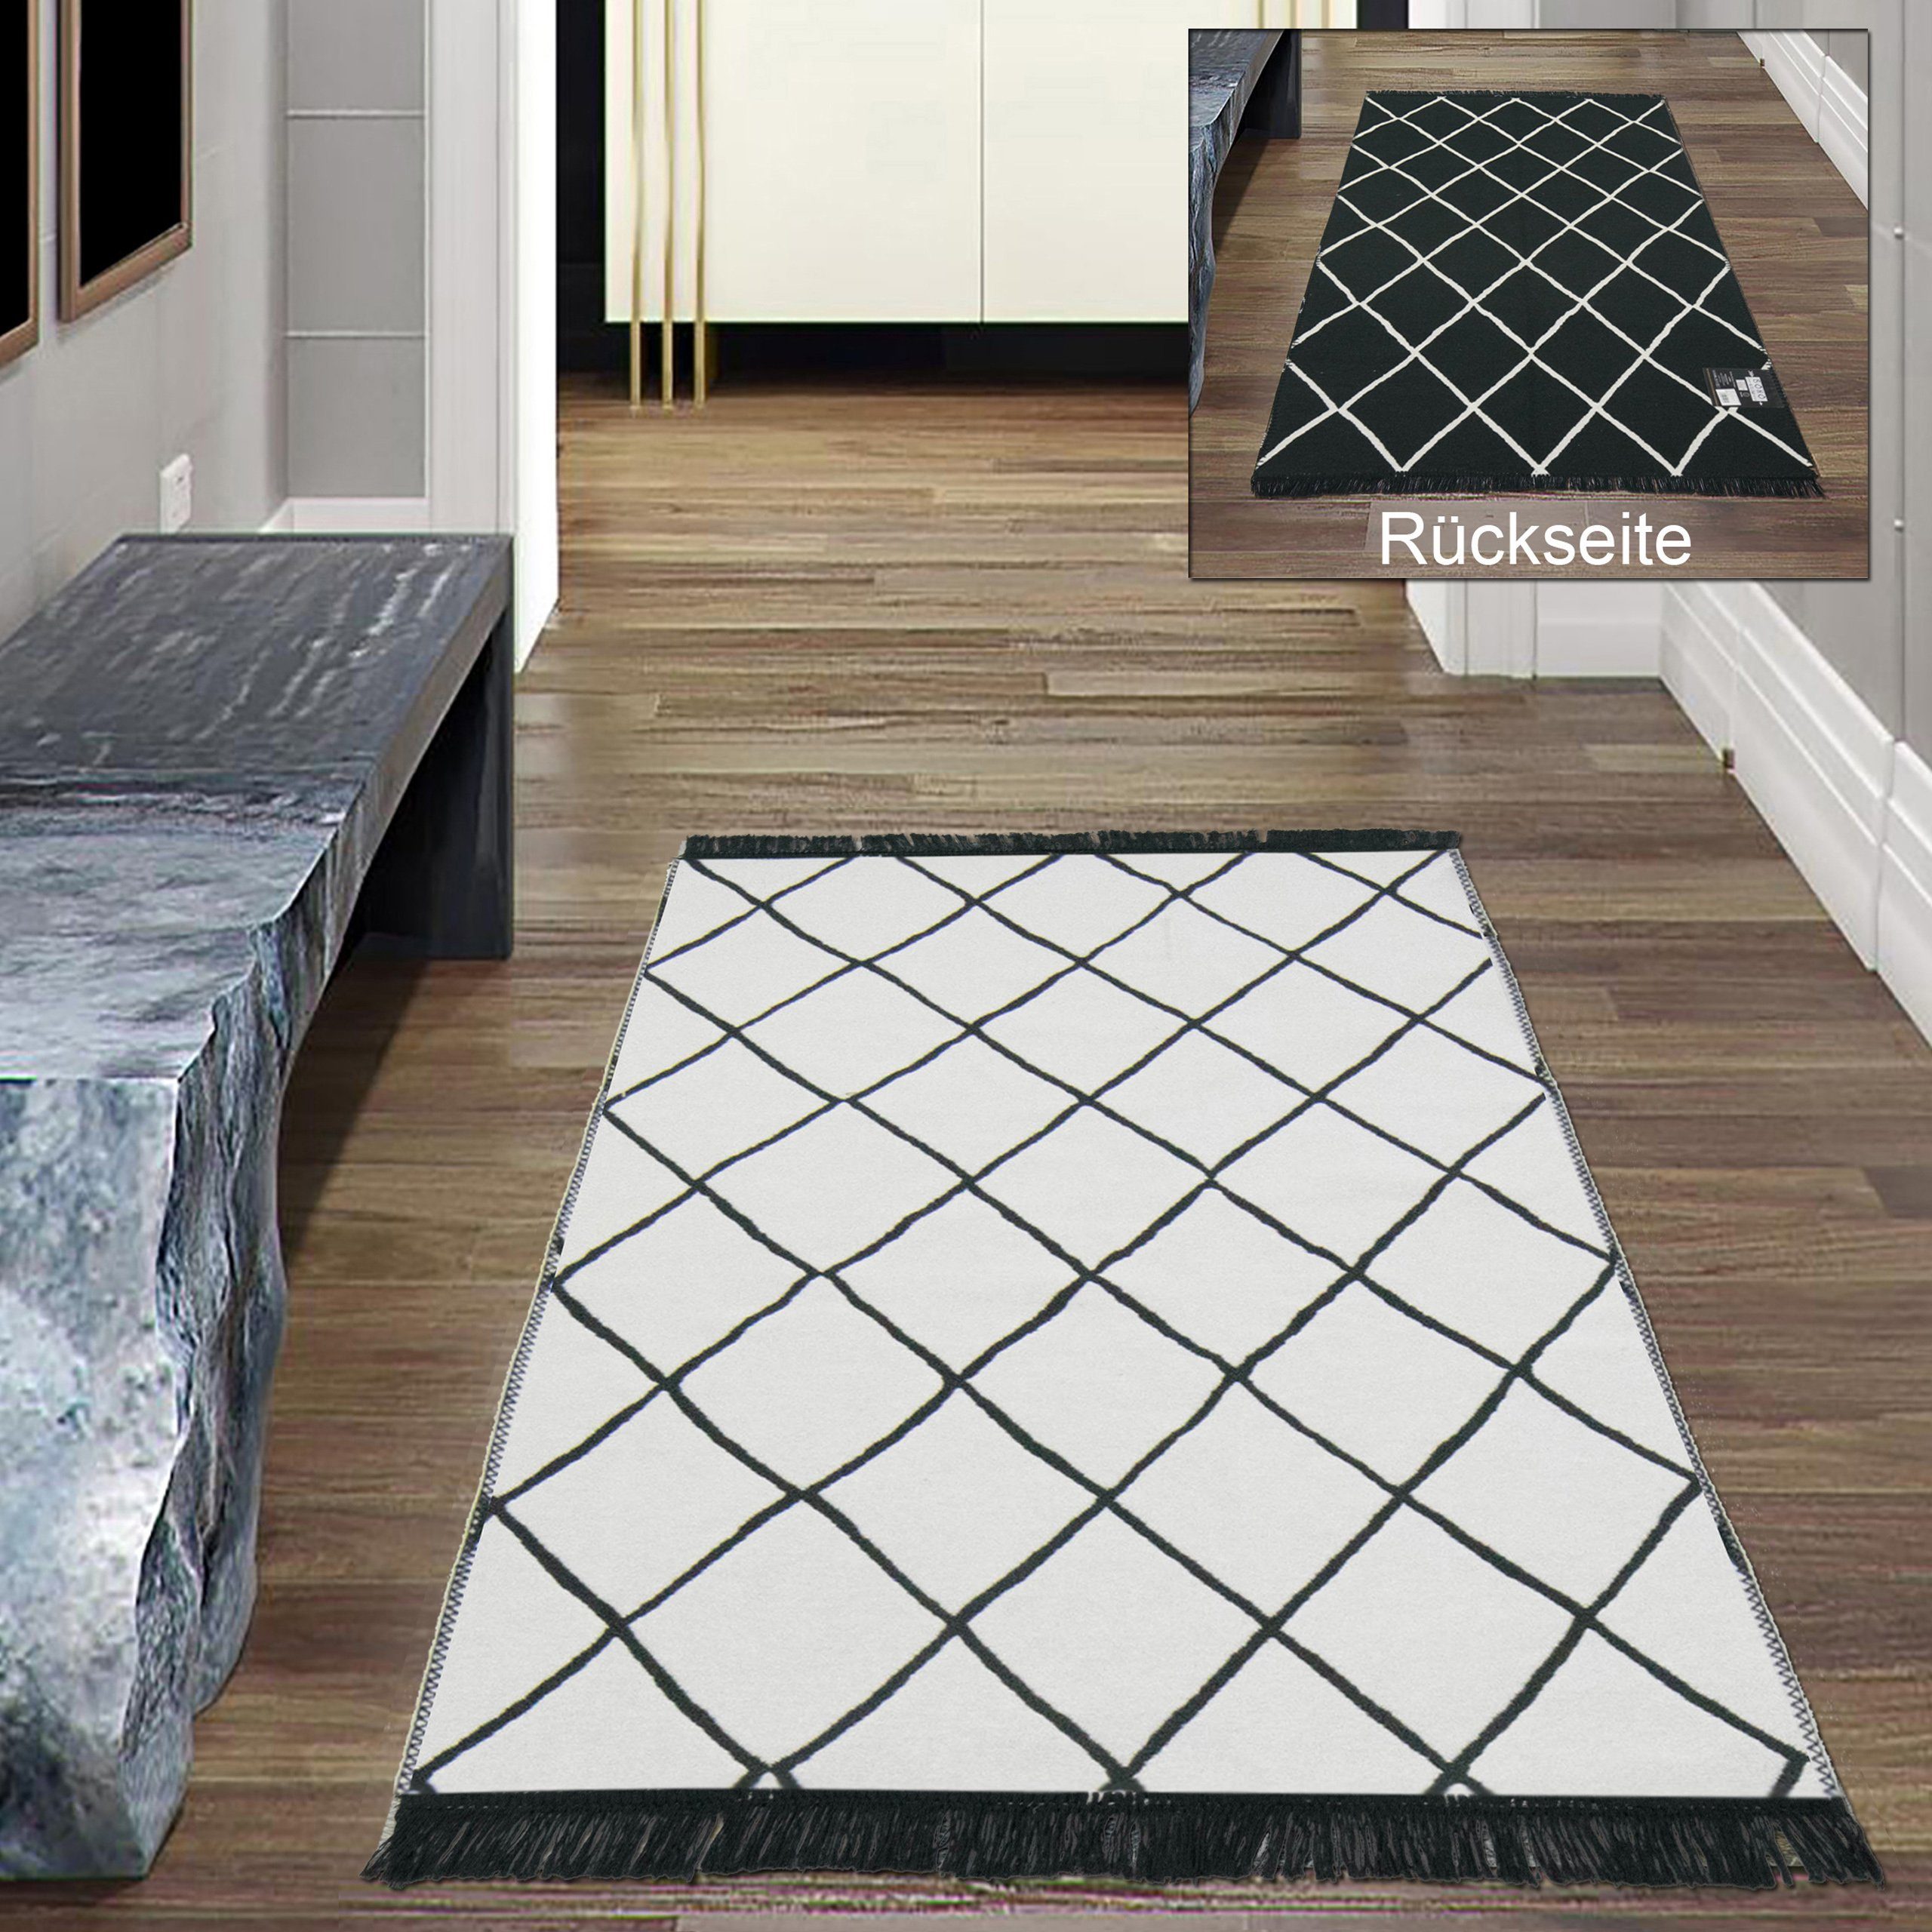 Outdoorteppich Wendeteppich für drinnen & draußen 2 Rauten Farbdesigns  schwarz weiß creme, Teppich-Traum, rechteckig